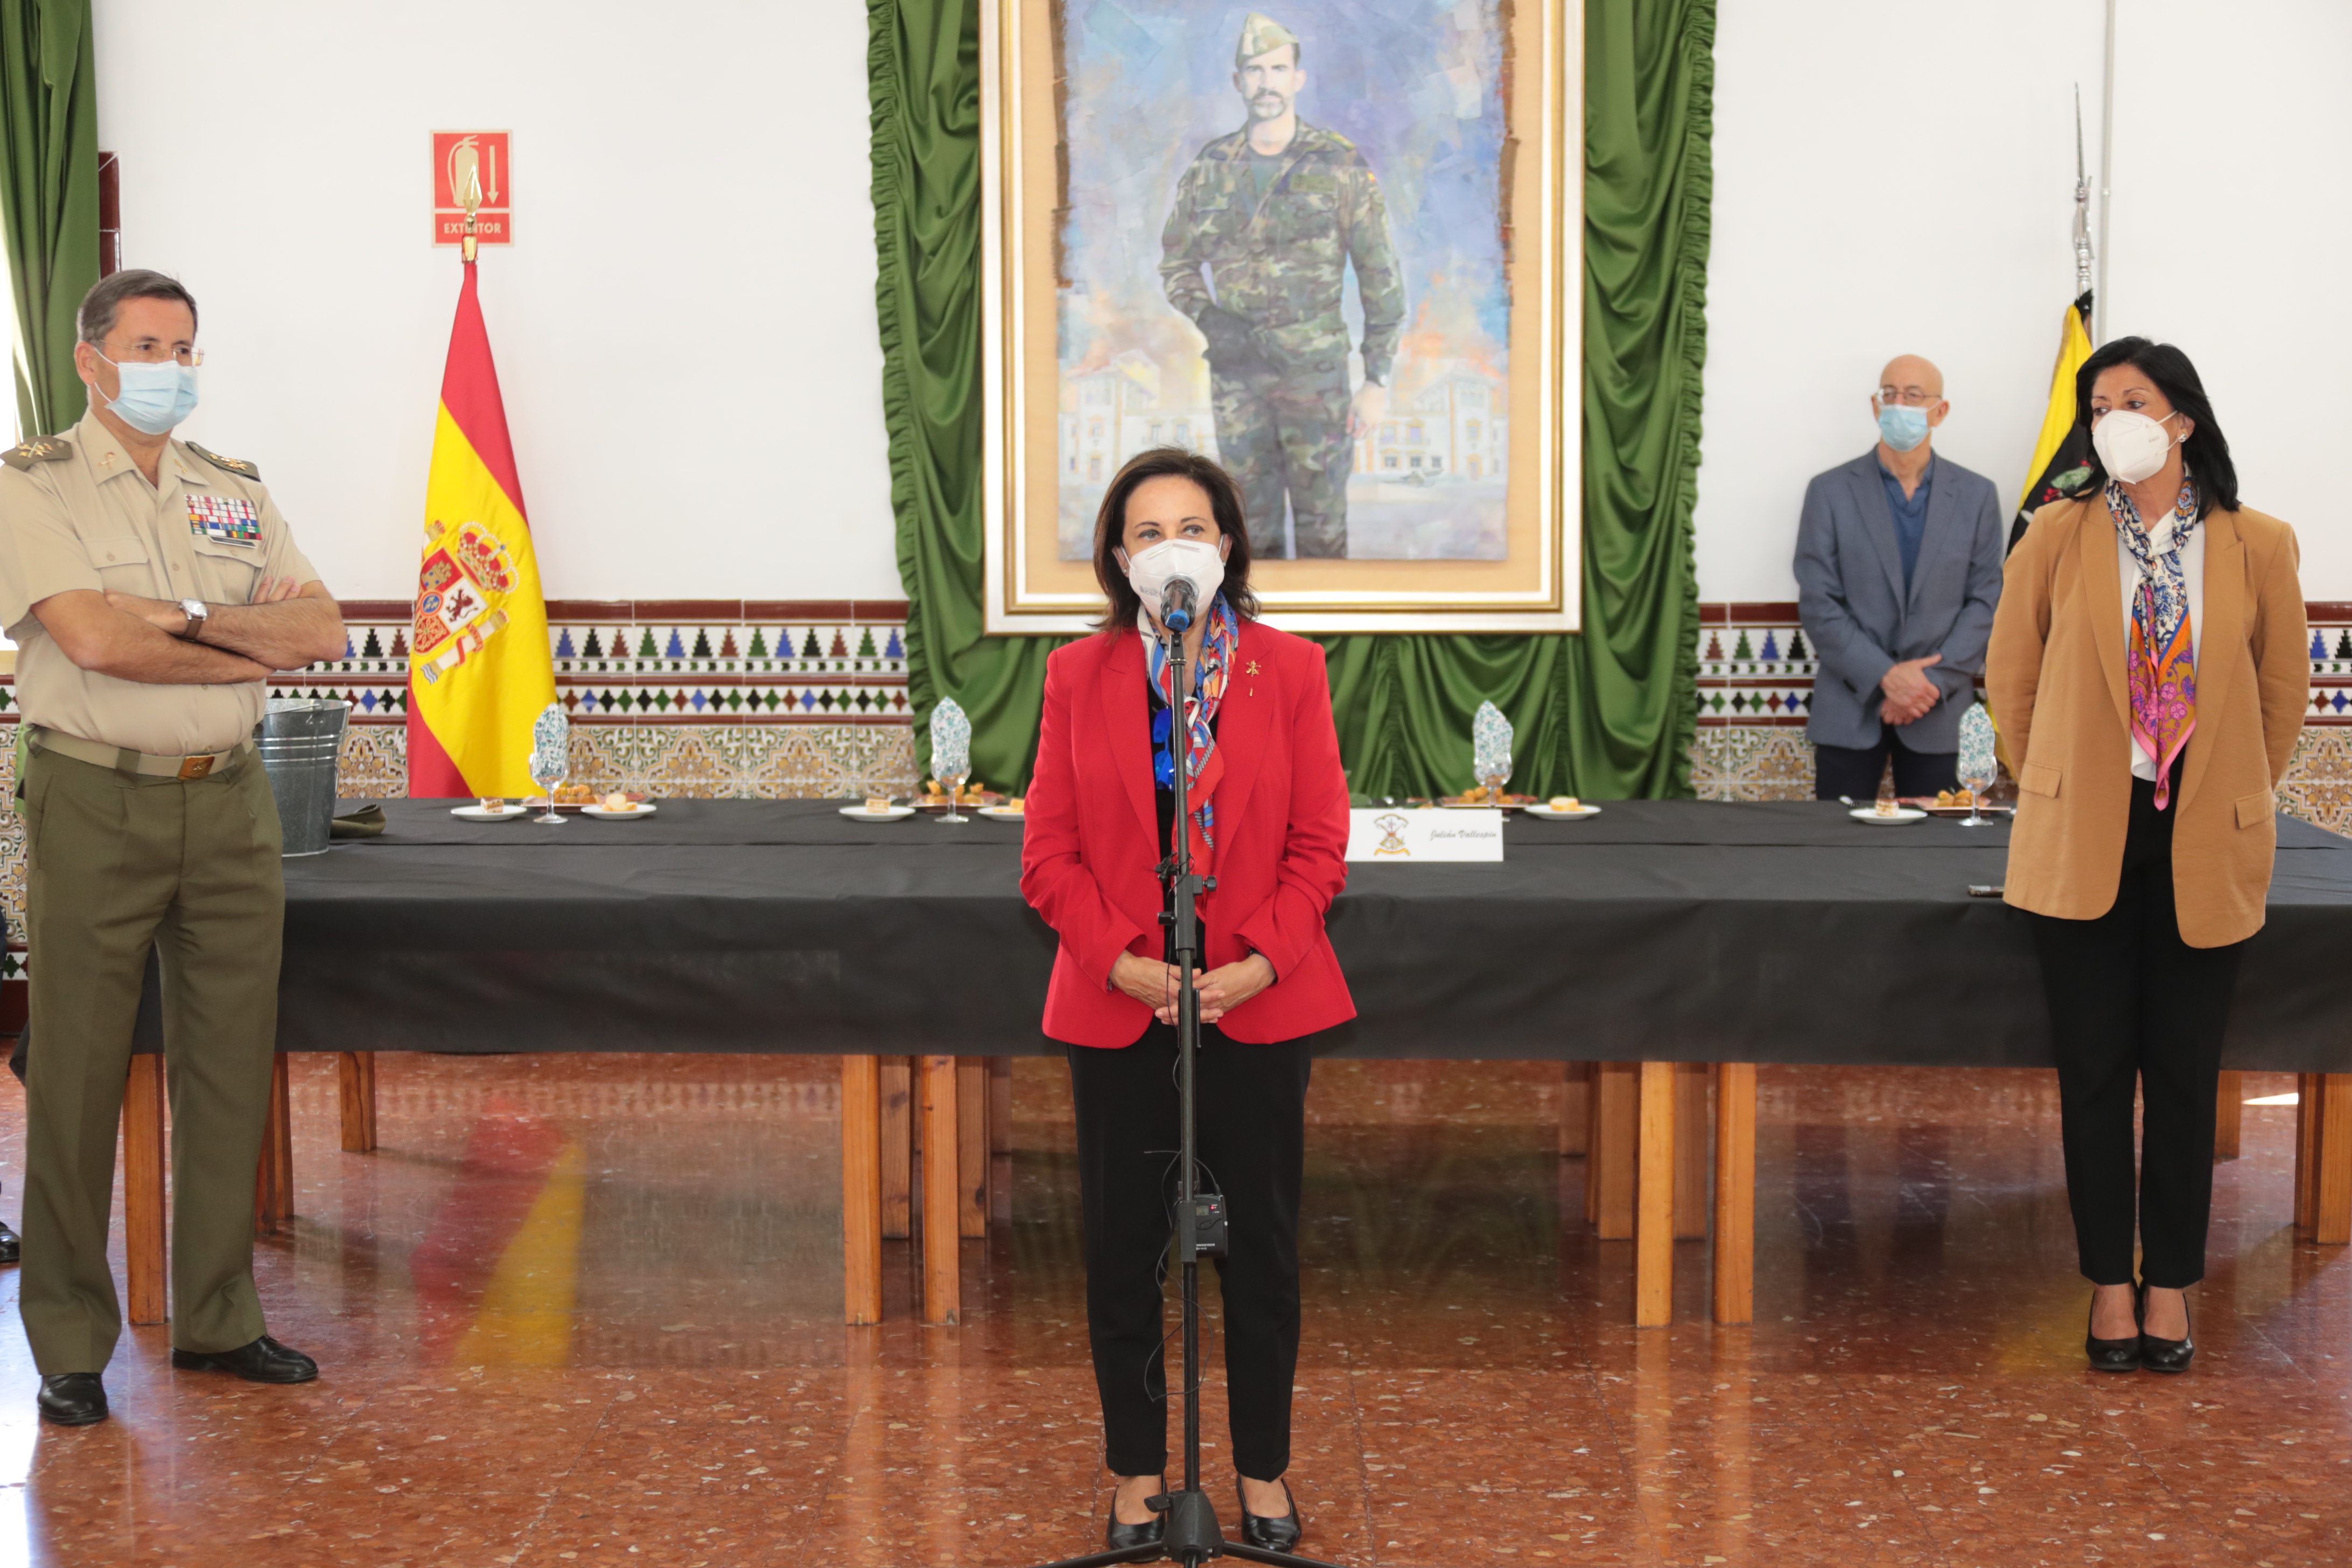 Fotos: La ministra Robles supervisa la brigada experimental